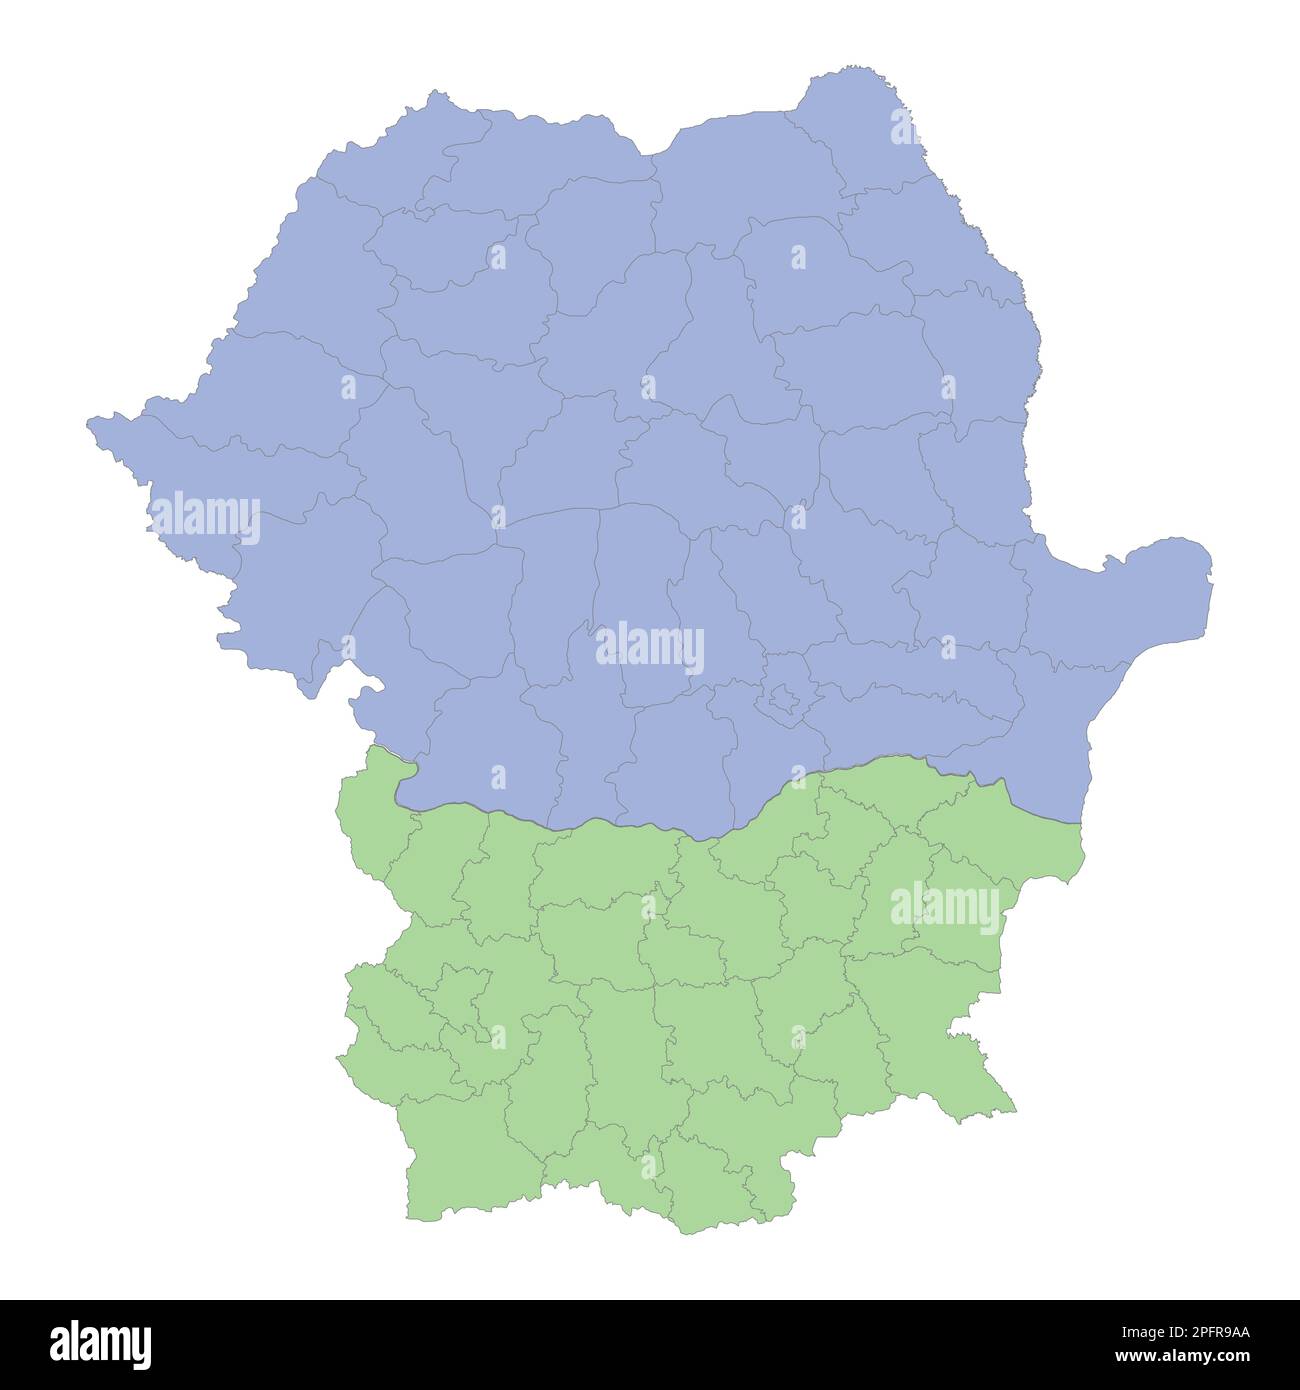 Mappa politica di alta qualità della Romania e della Bulgaria con i confini delle regioni o delle province. Illustrazione vettoriale Illustrazione Vettoriale